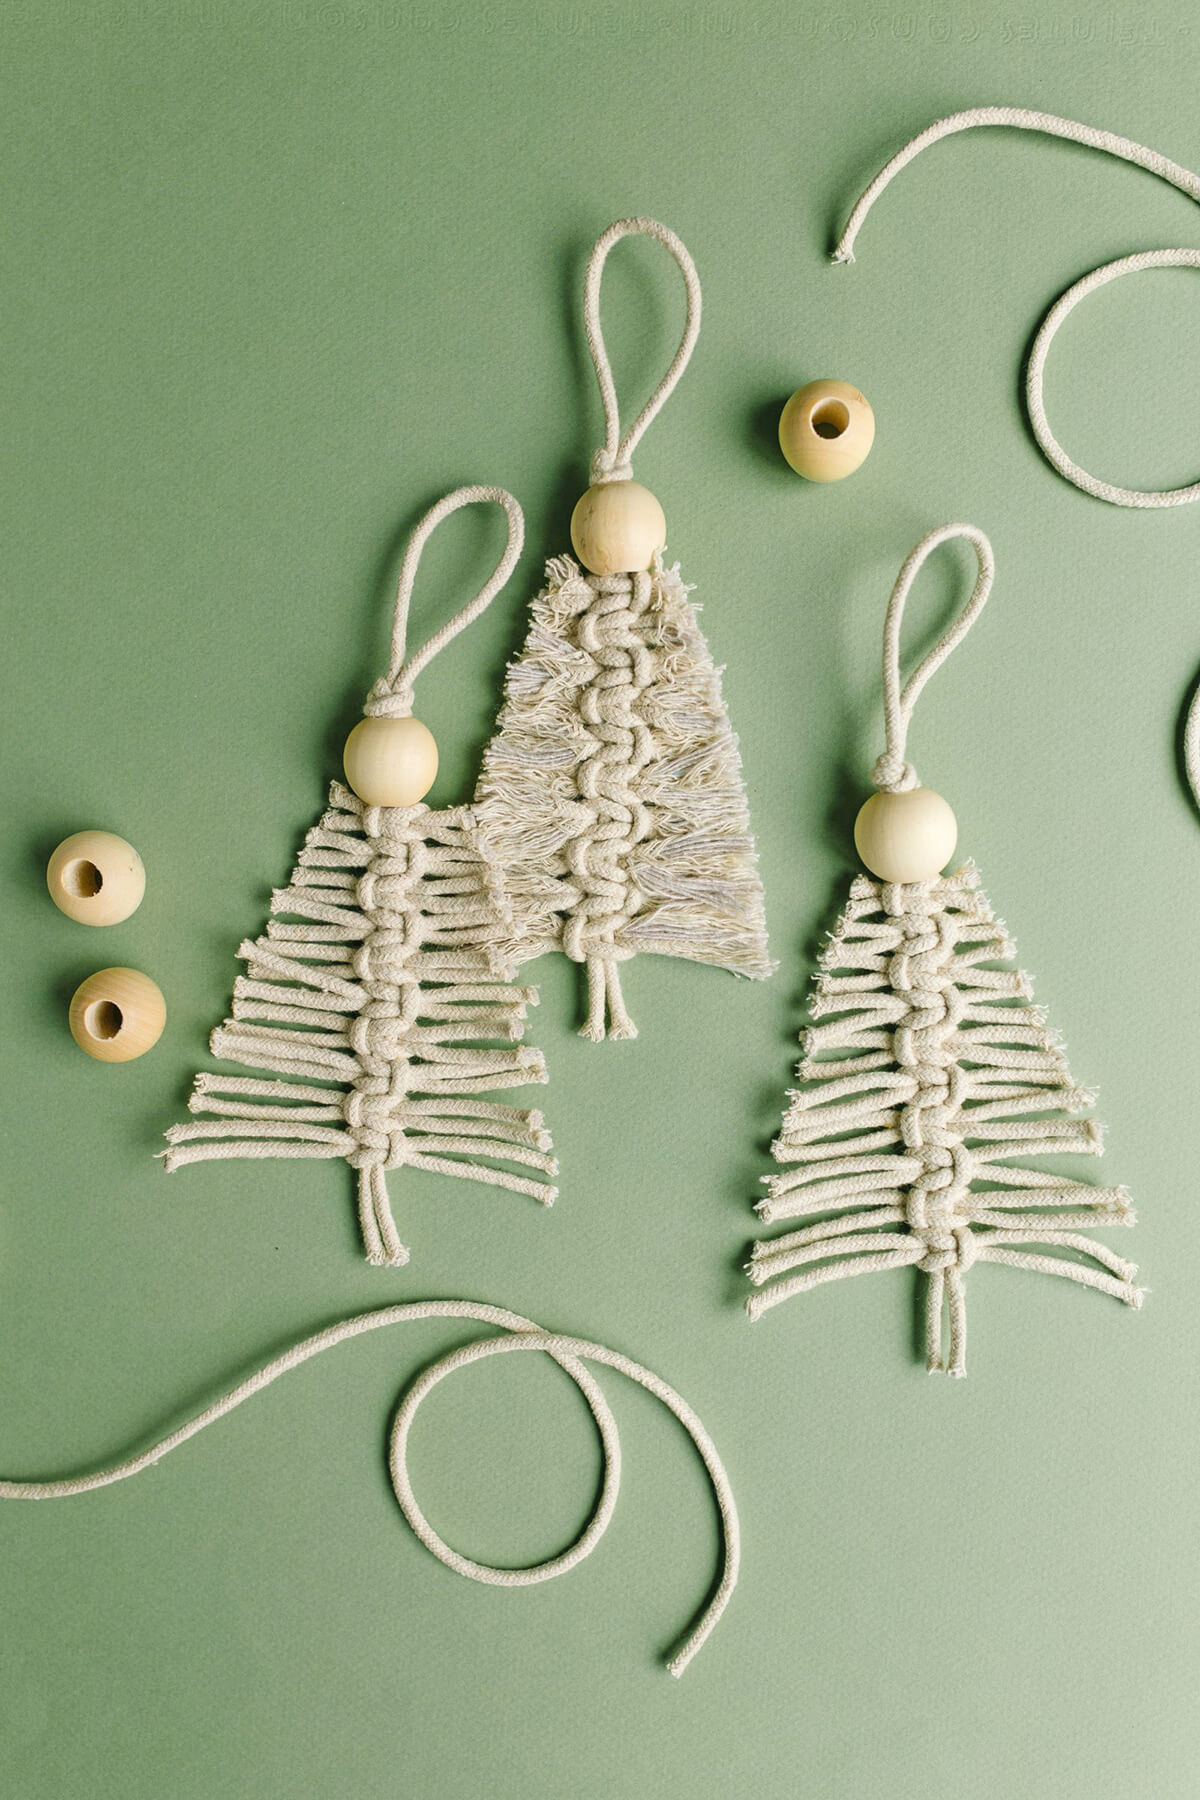 DIY Yarn Macrame Christmas Ornaments